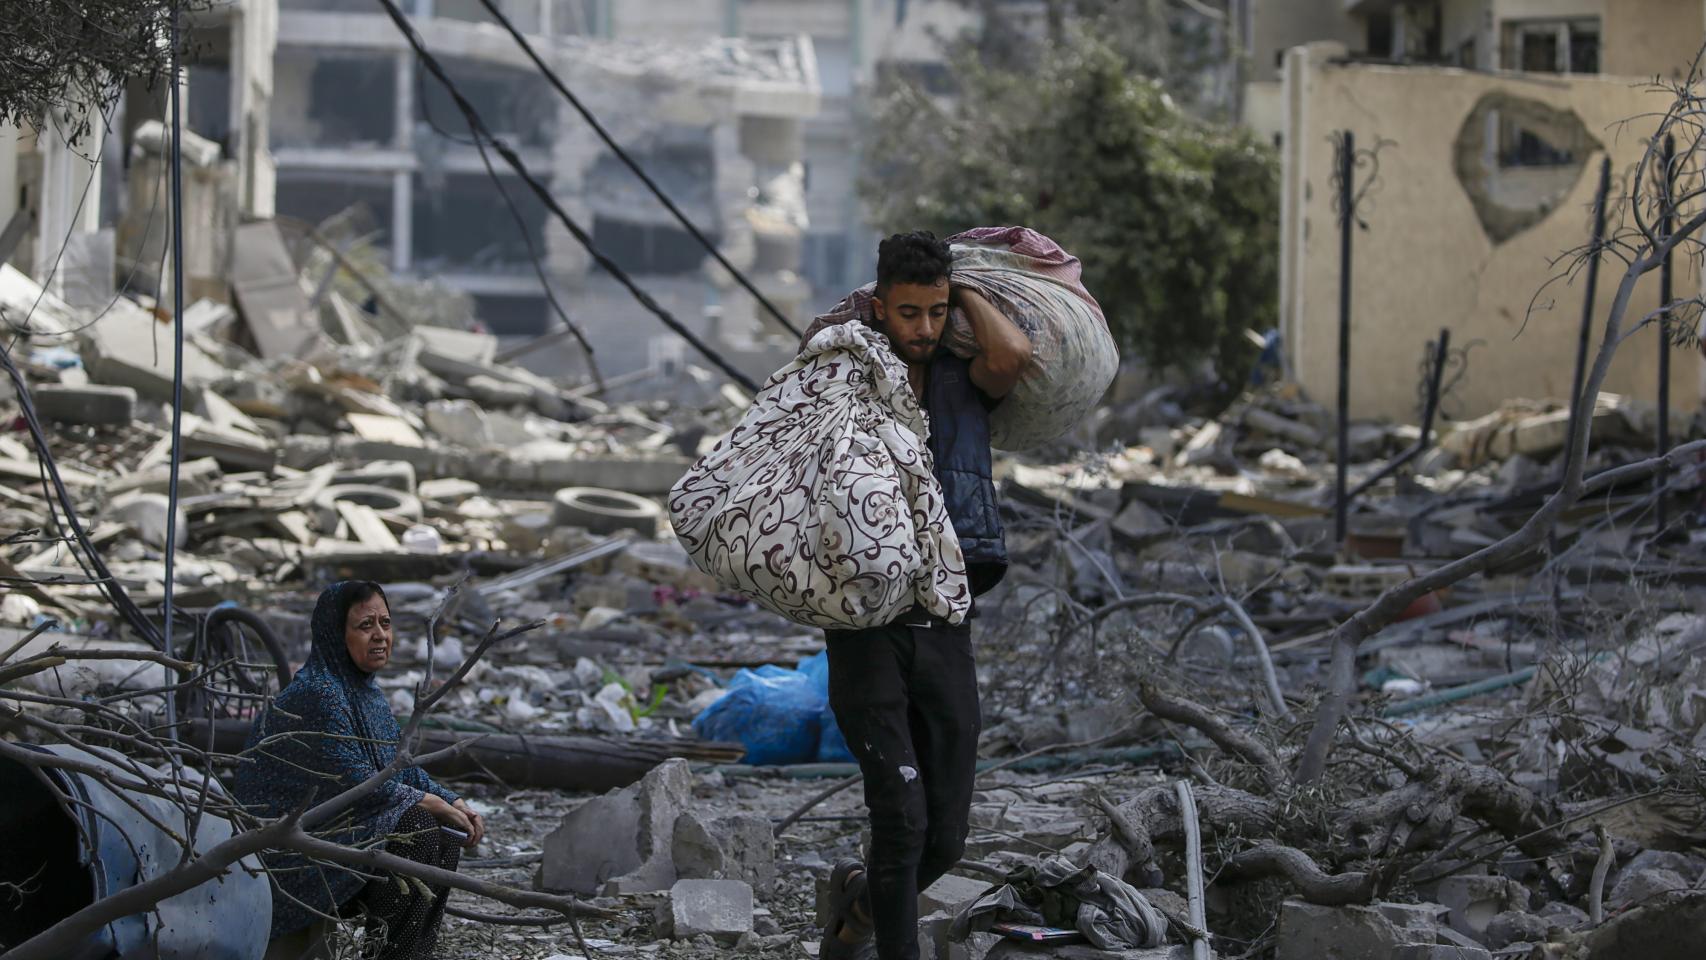 Una mujer sentada entre los escombros del barrio de Al-Ramal observa a un joven transportar dos sacos.